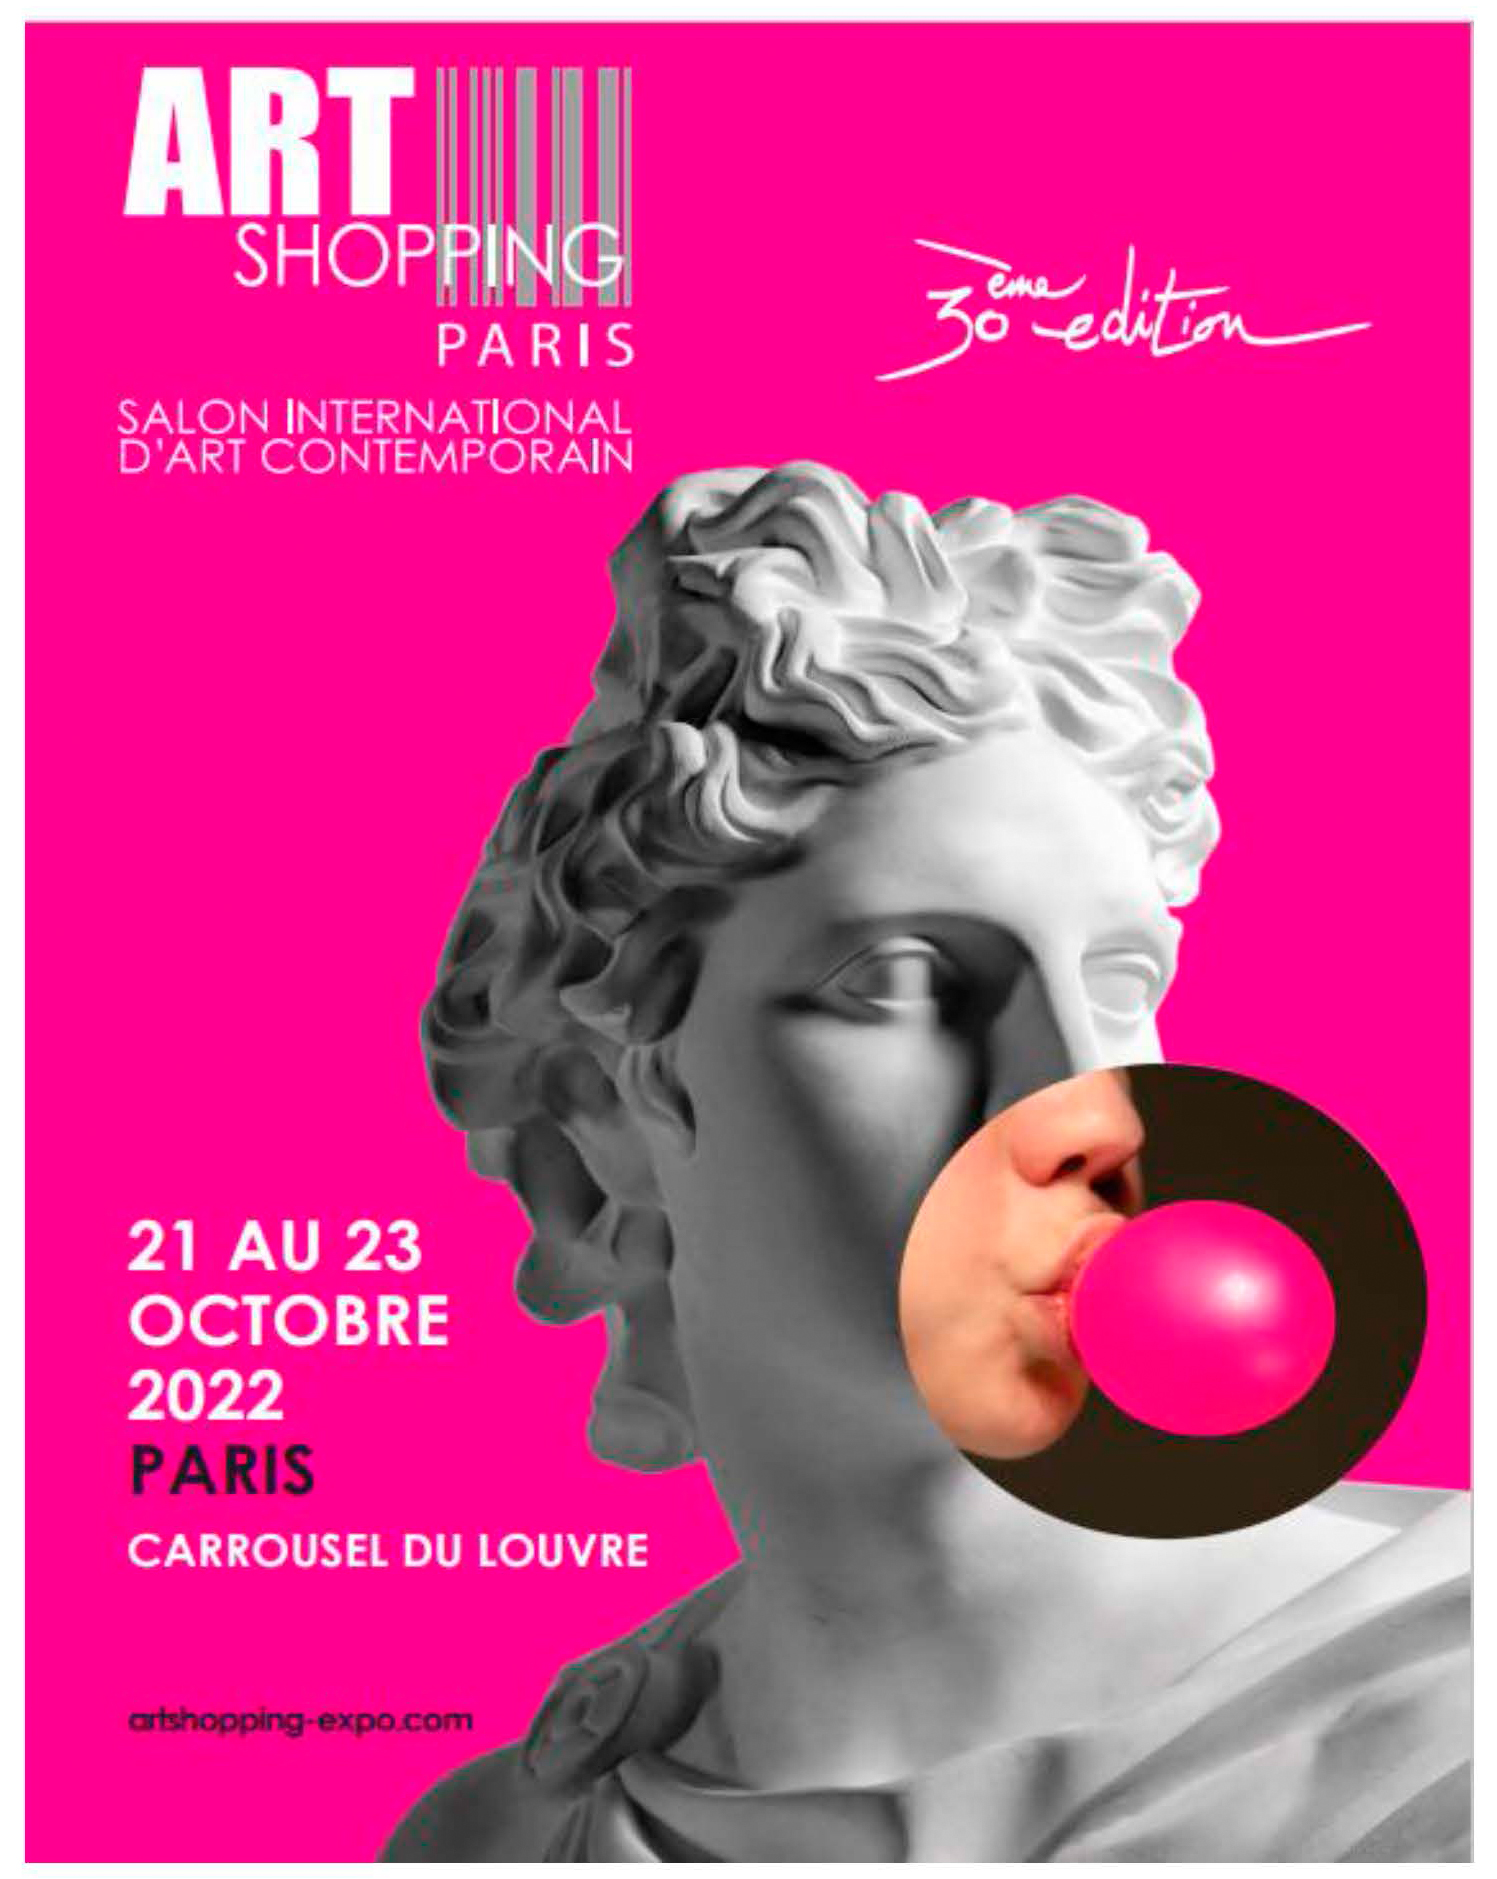 Art shopping Paris / Carrousel de Louvre